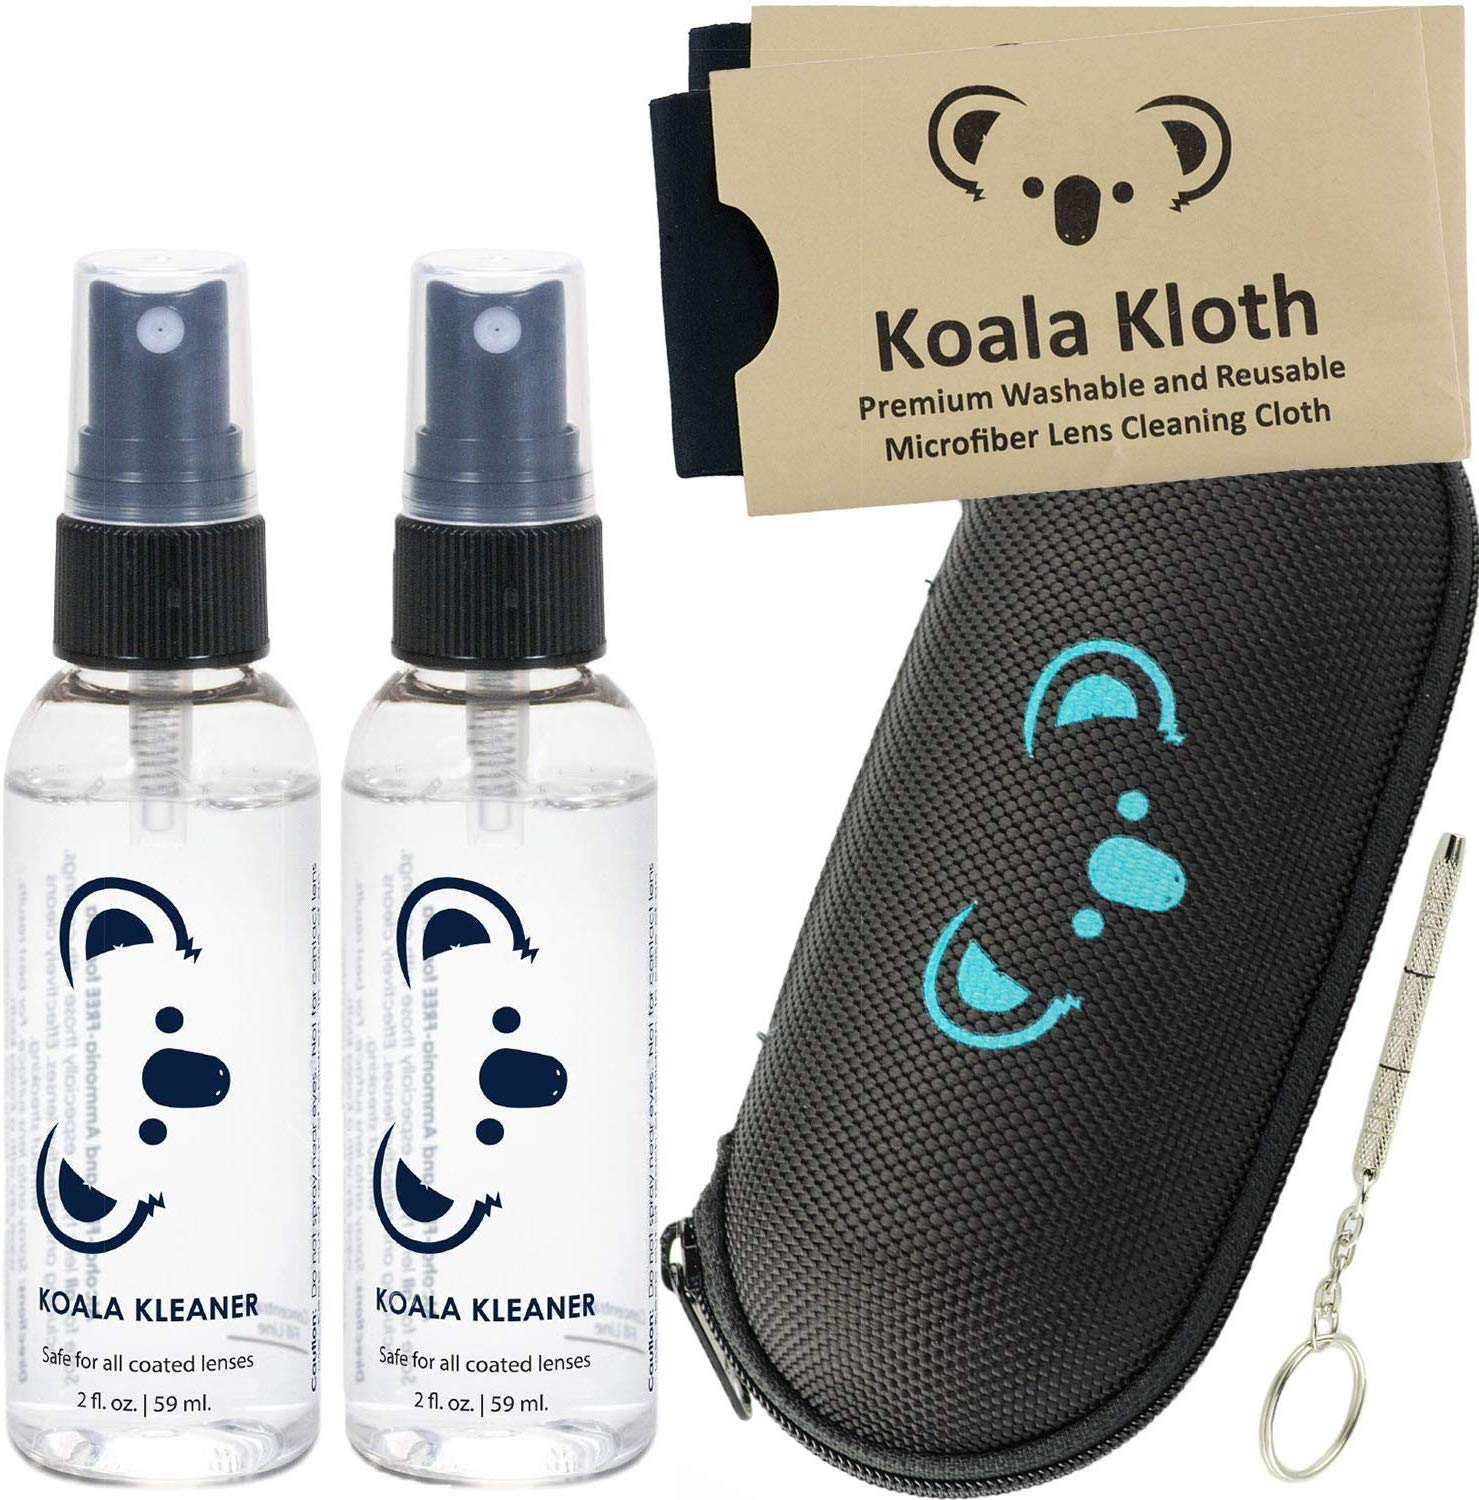 Koala Kleaner Travel Kit